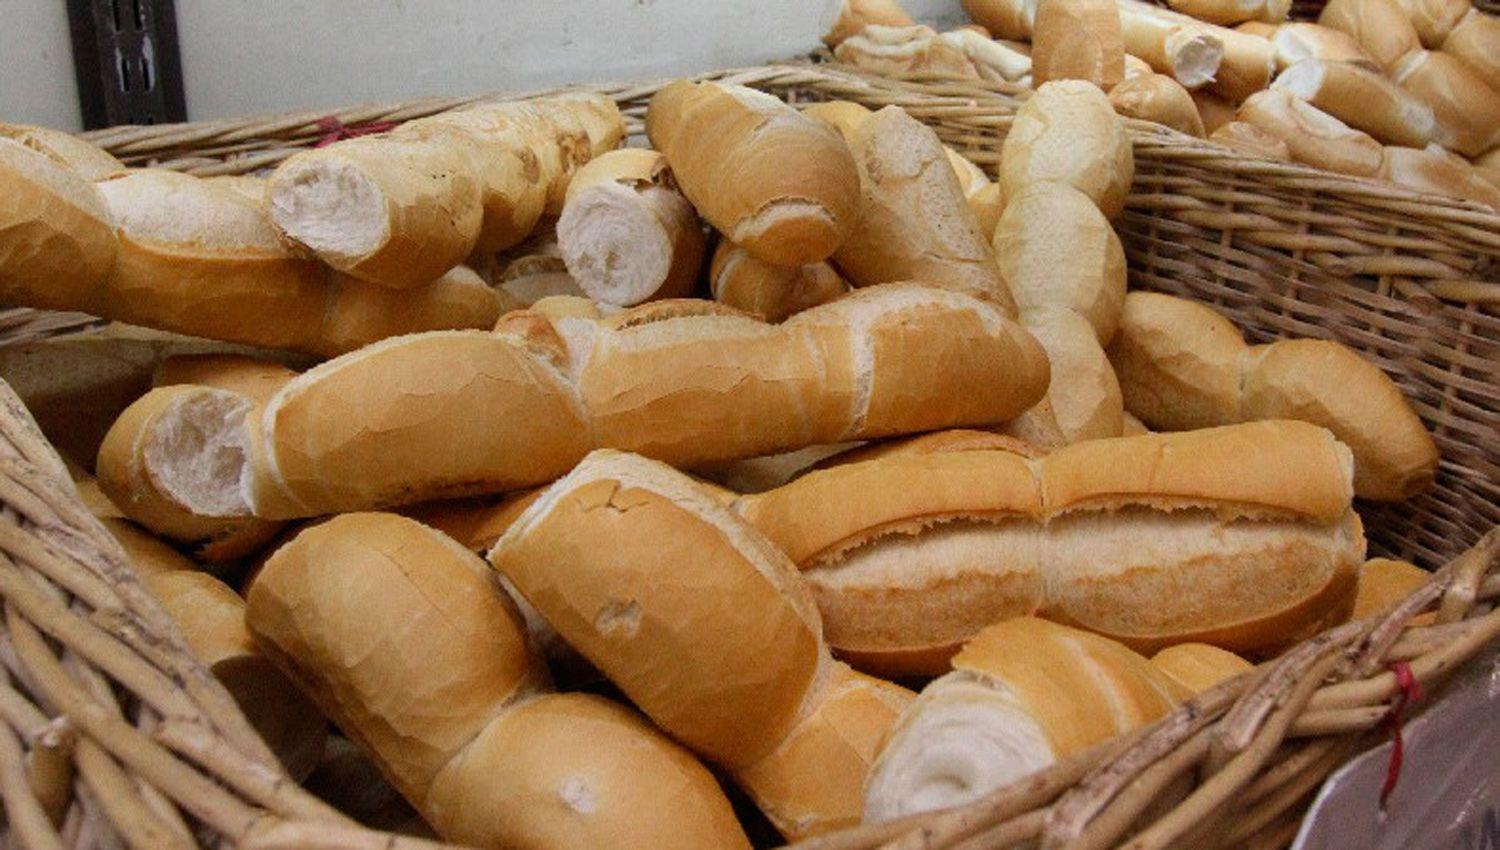 Aumenta desde hoy en 15 el kilogramo de pan que costaraacute 150